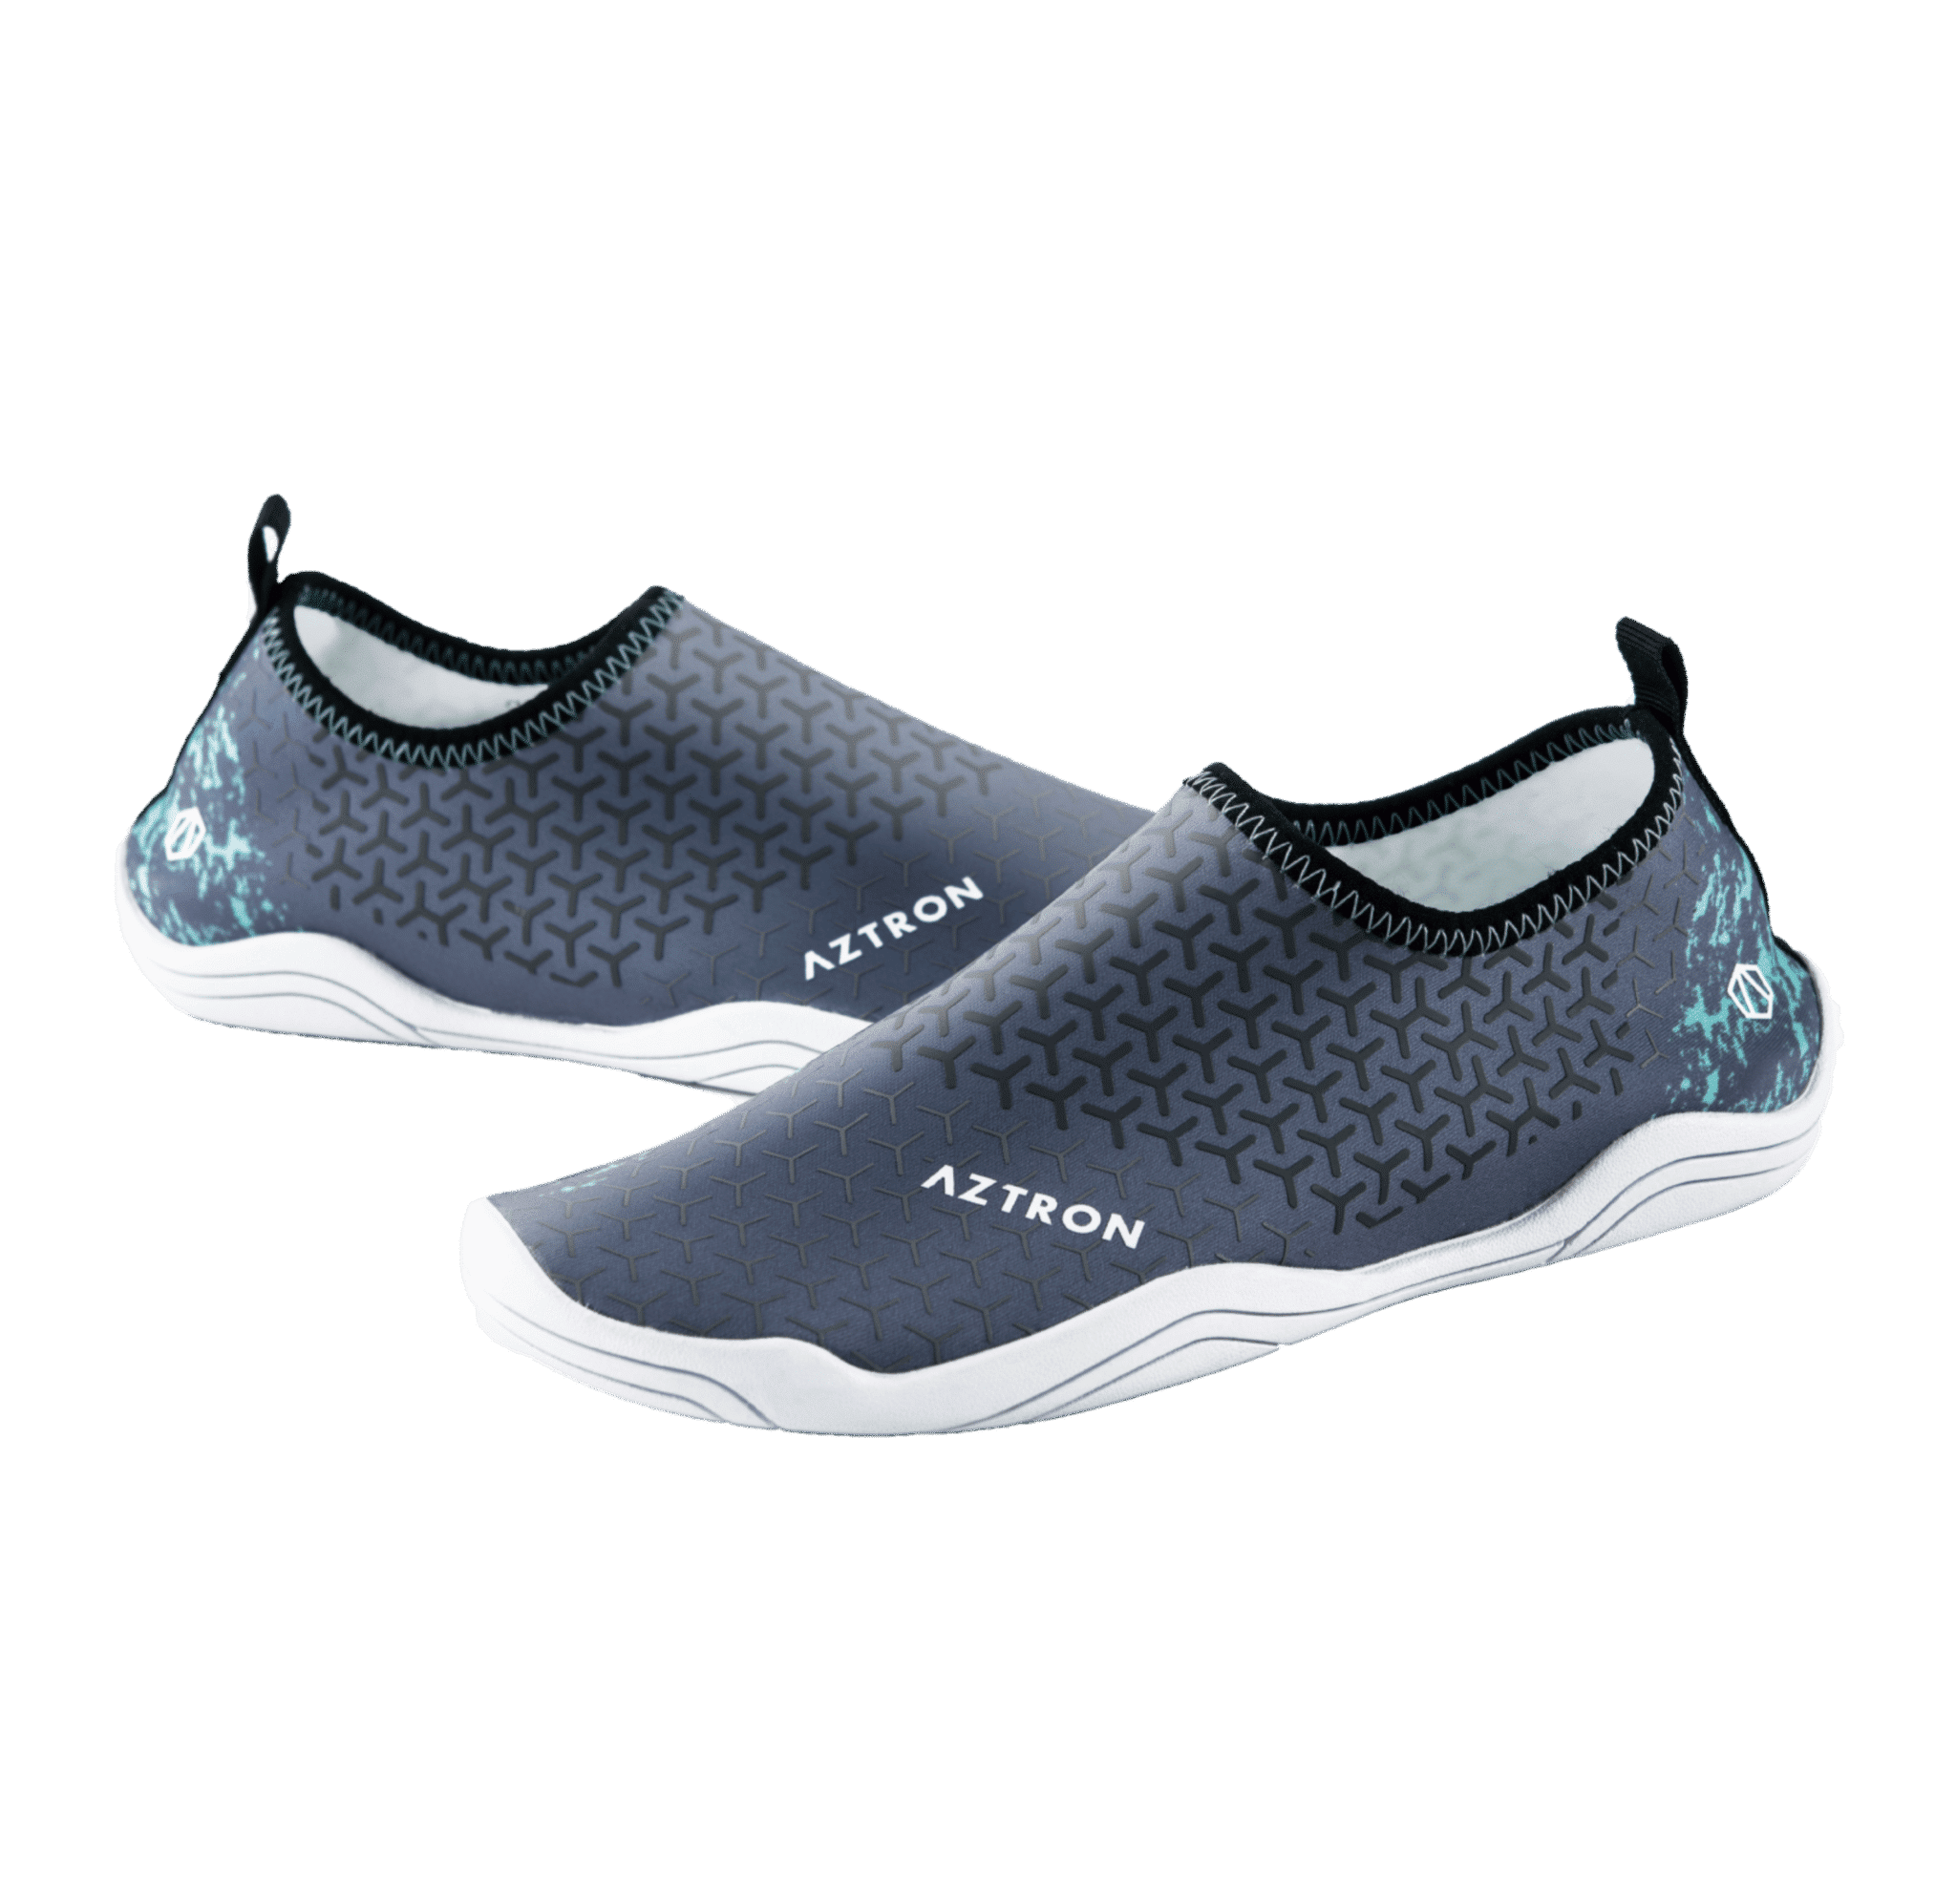 Aztron Gemini II Water Shoes